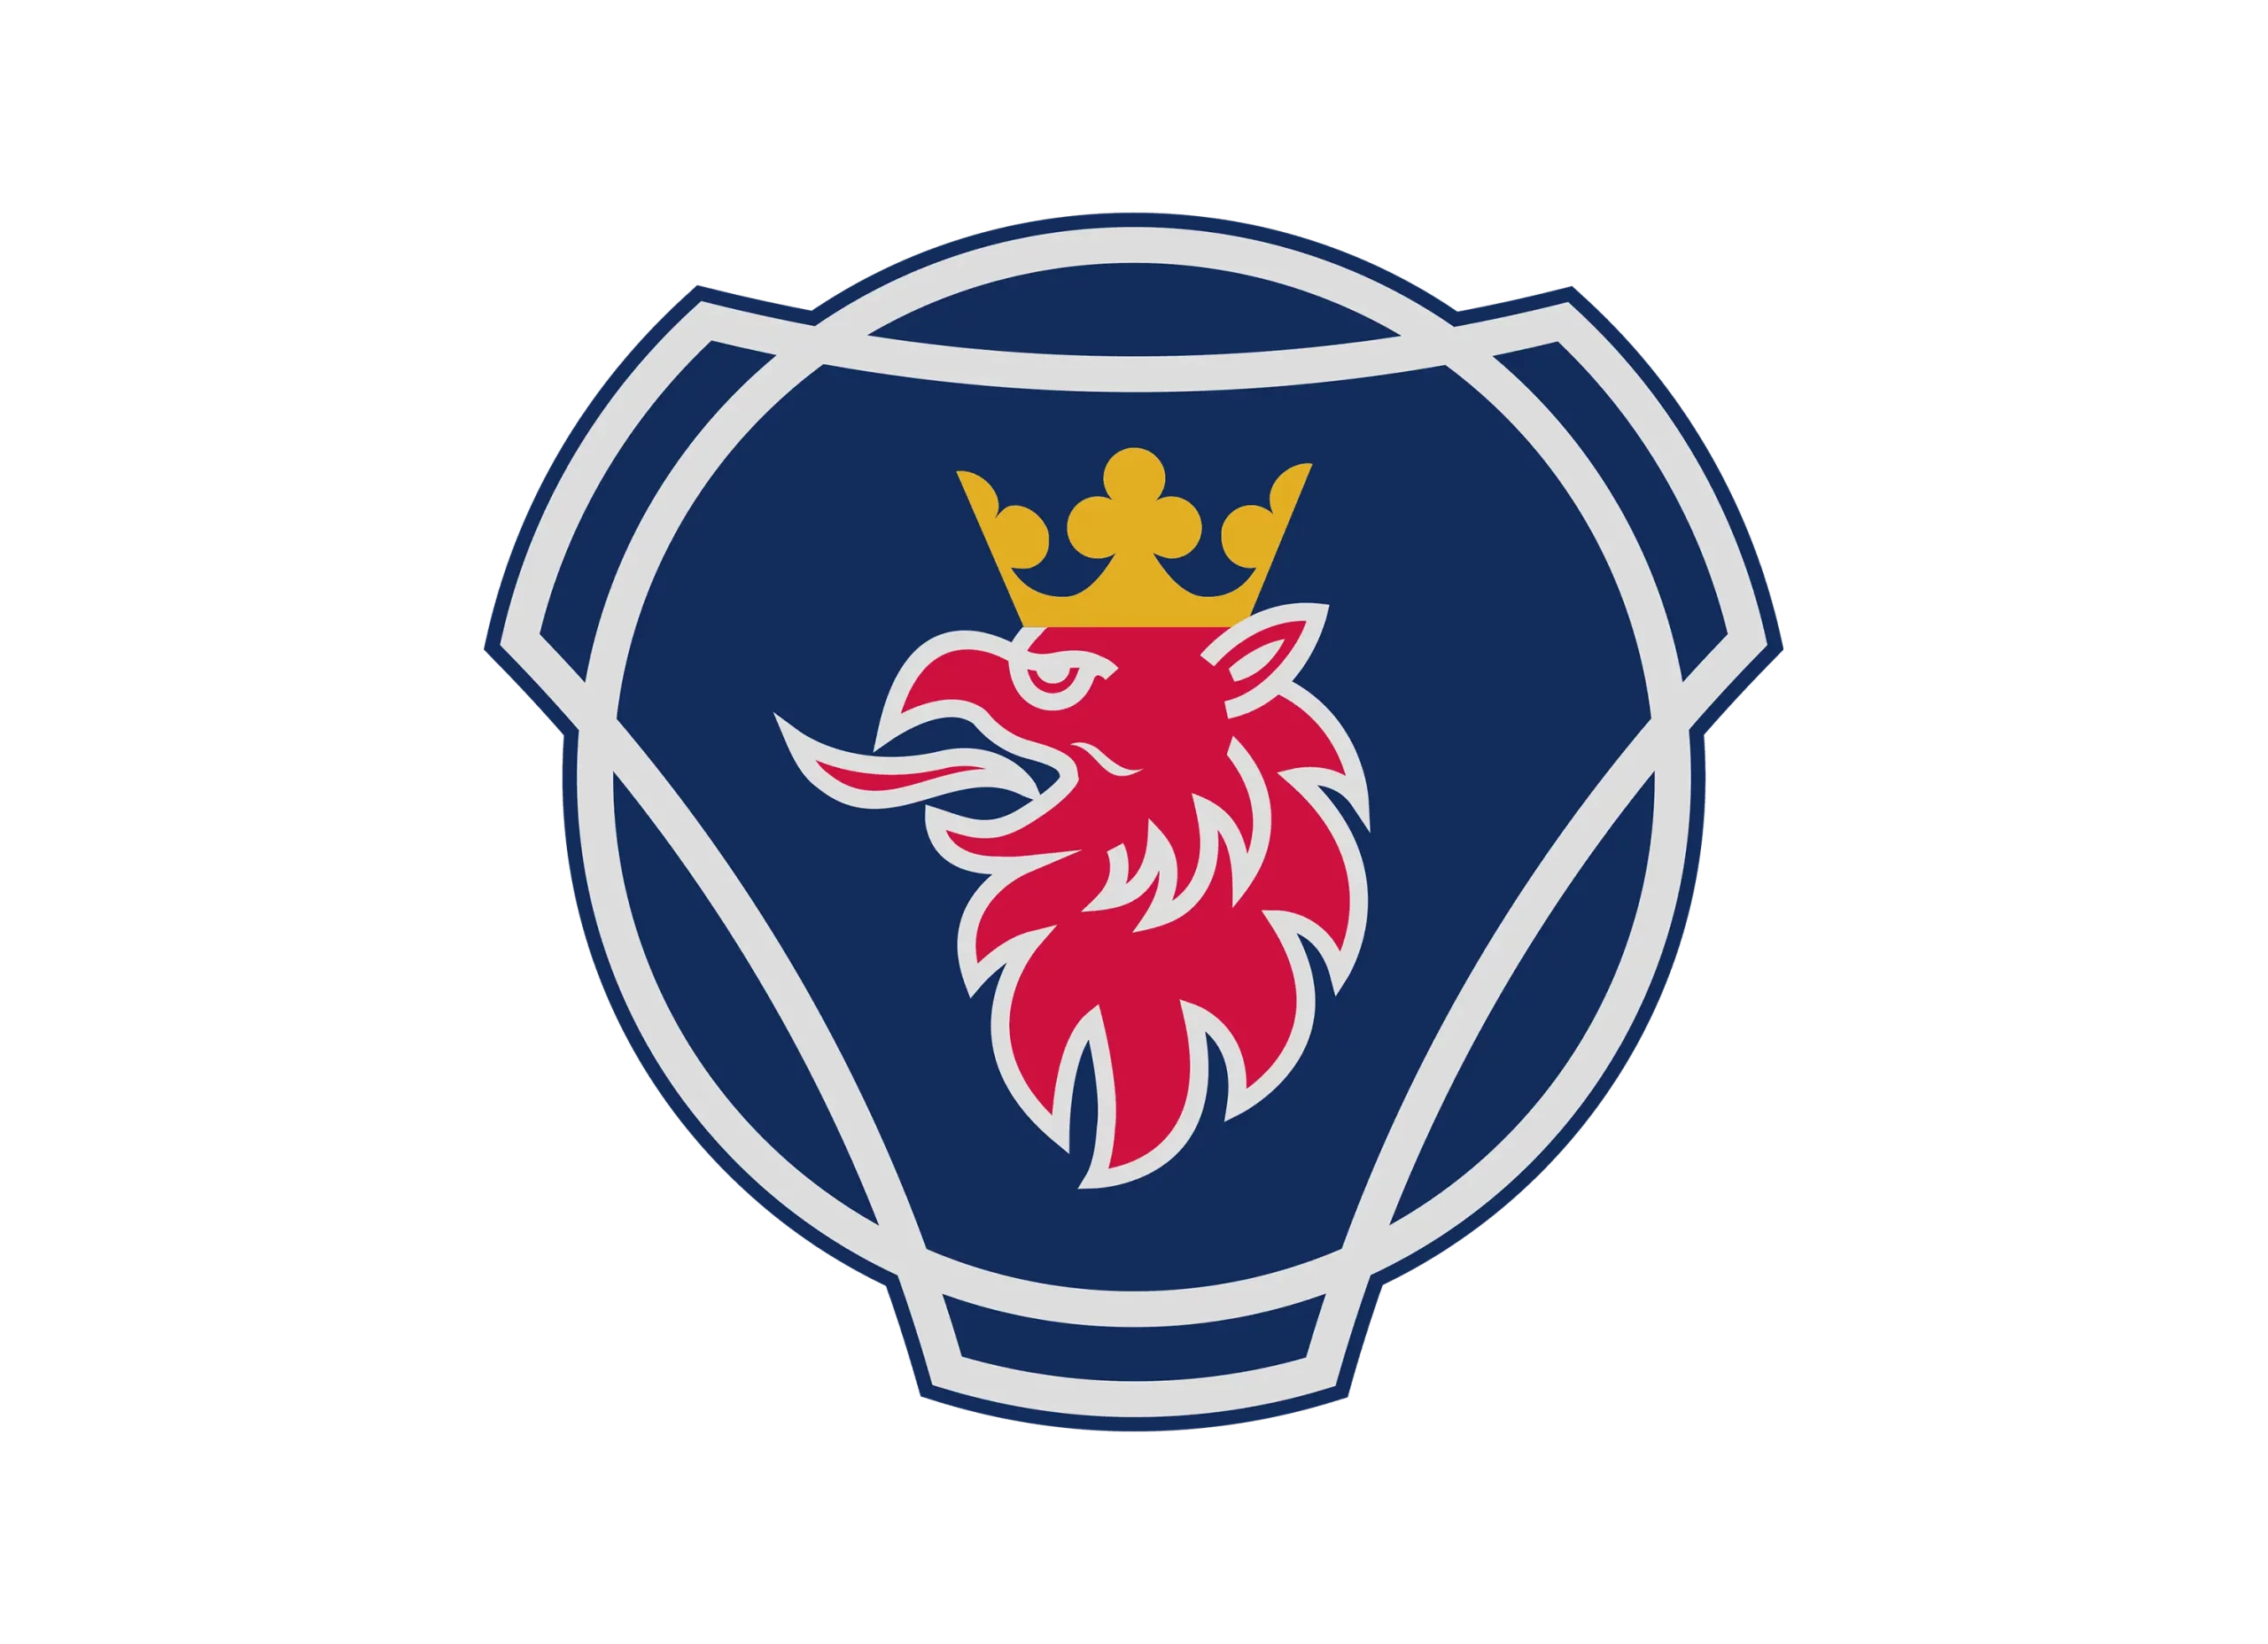 Scania logo 1995-2017